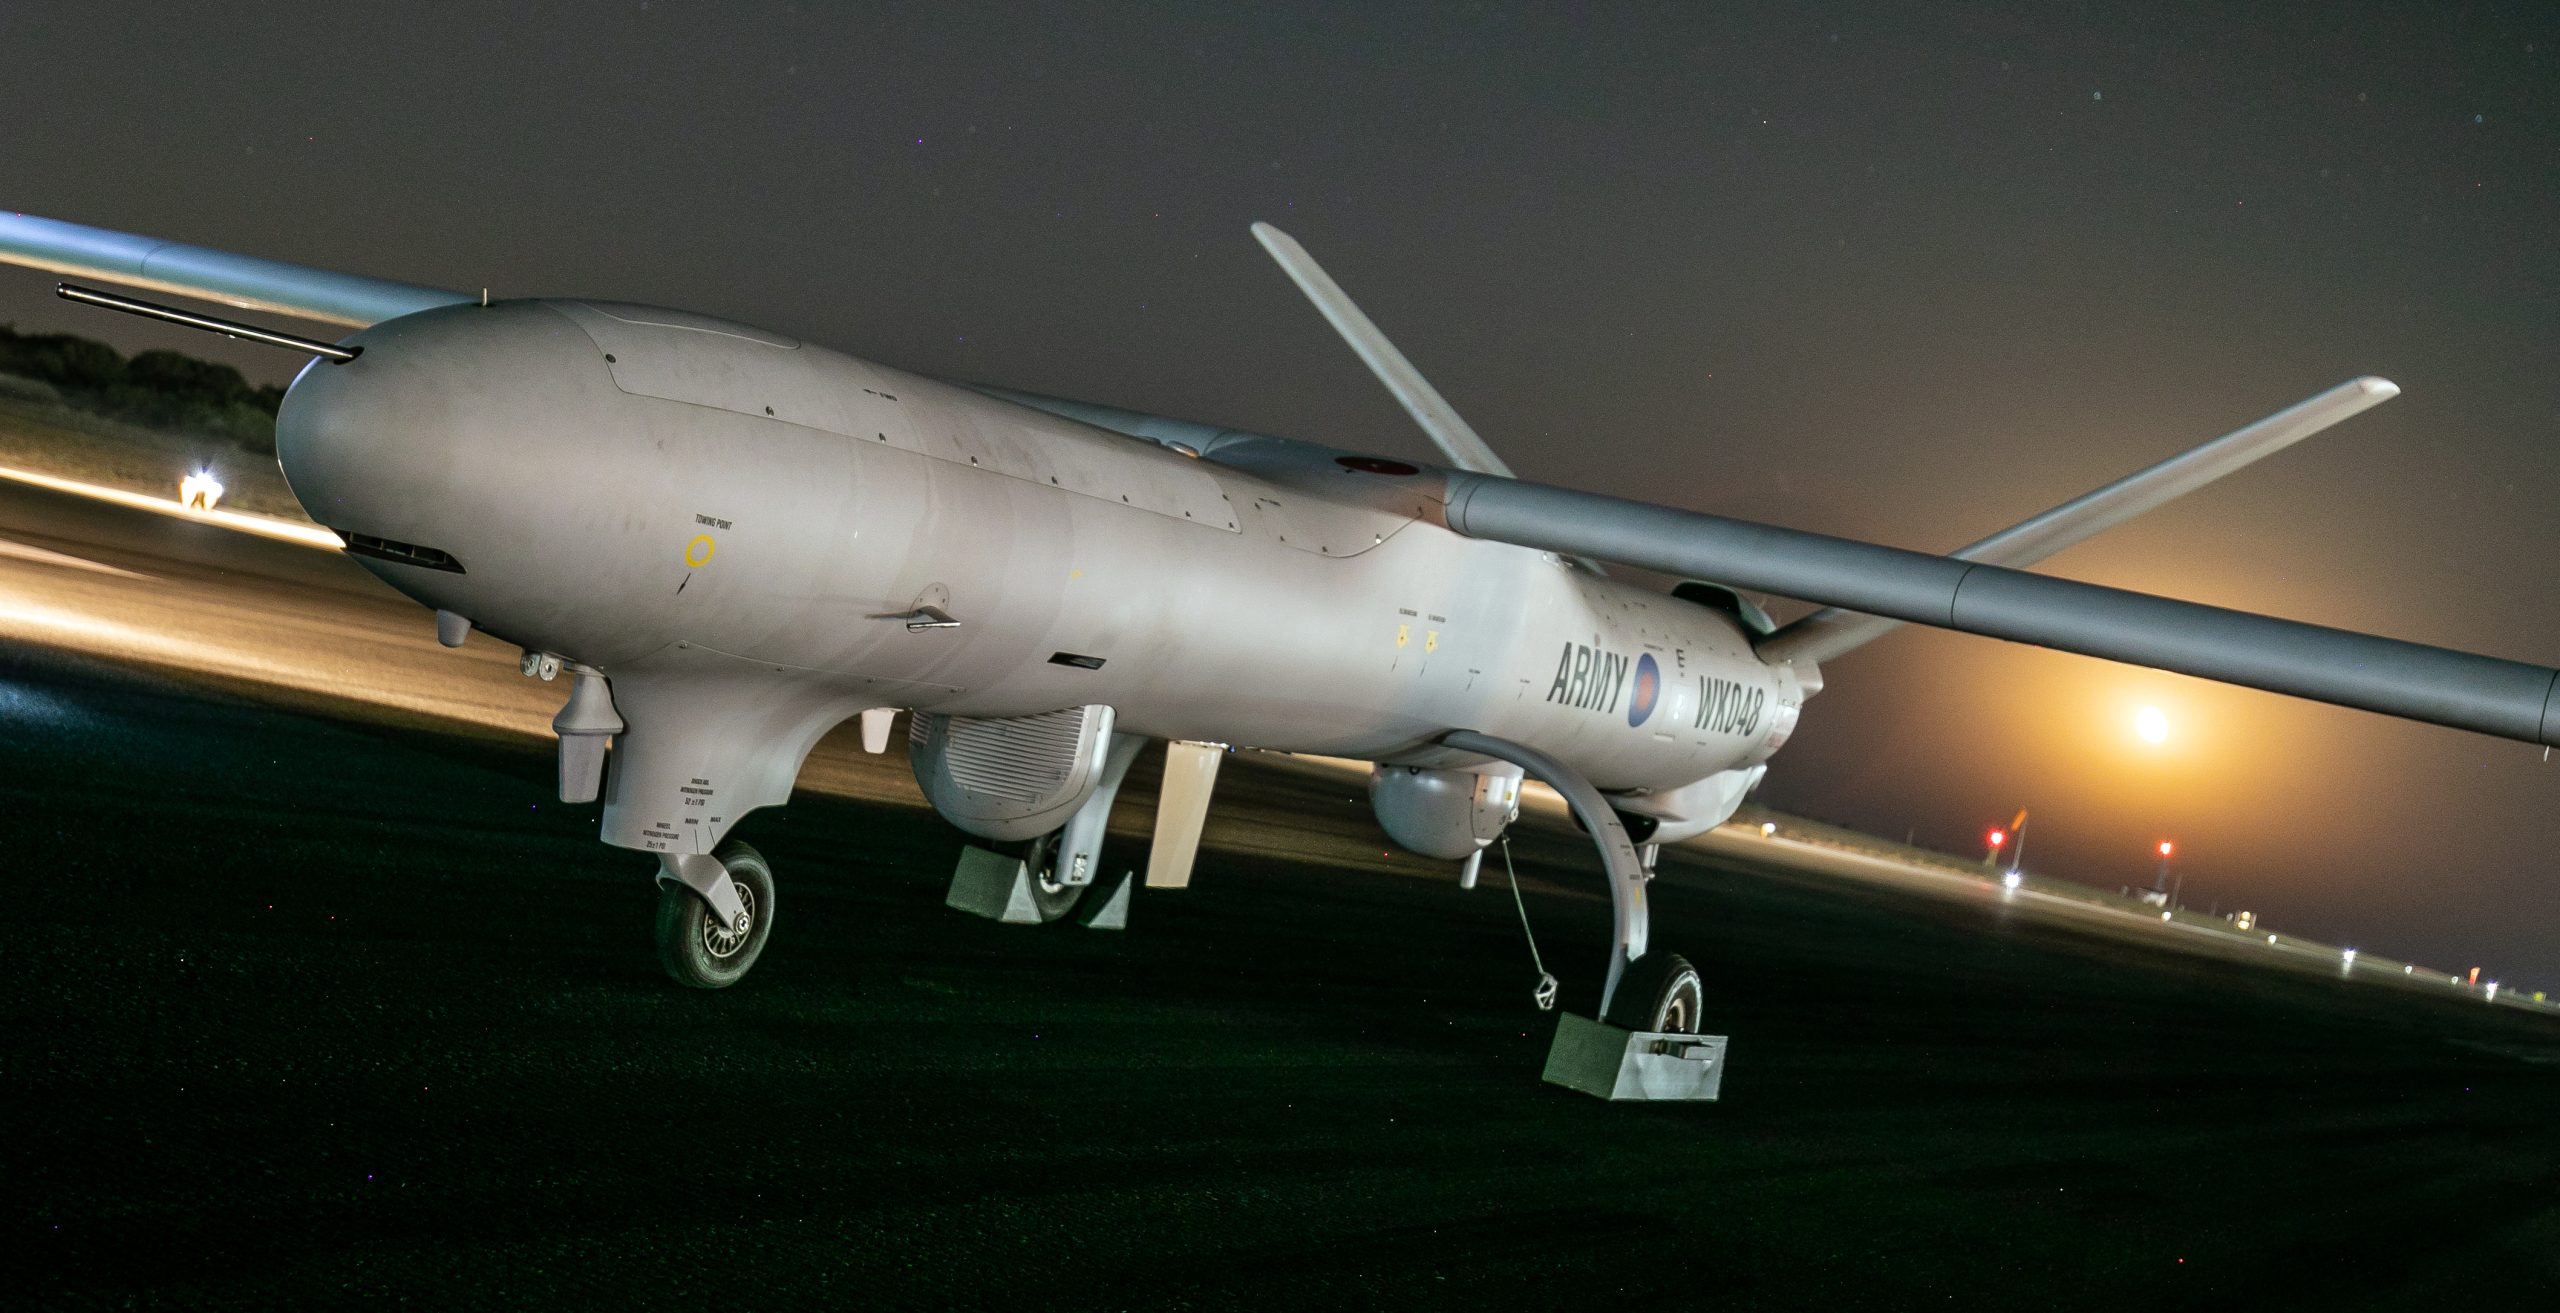 UAV τύπου Watchkeeper του βρετανικού Στρατού κατέπεσε ανοικτά των ακτών της Κύπρου